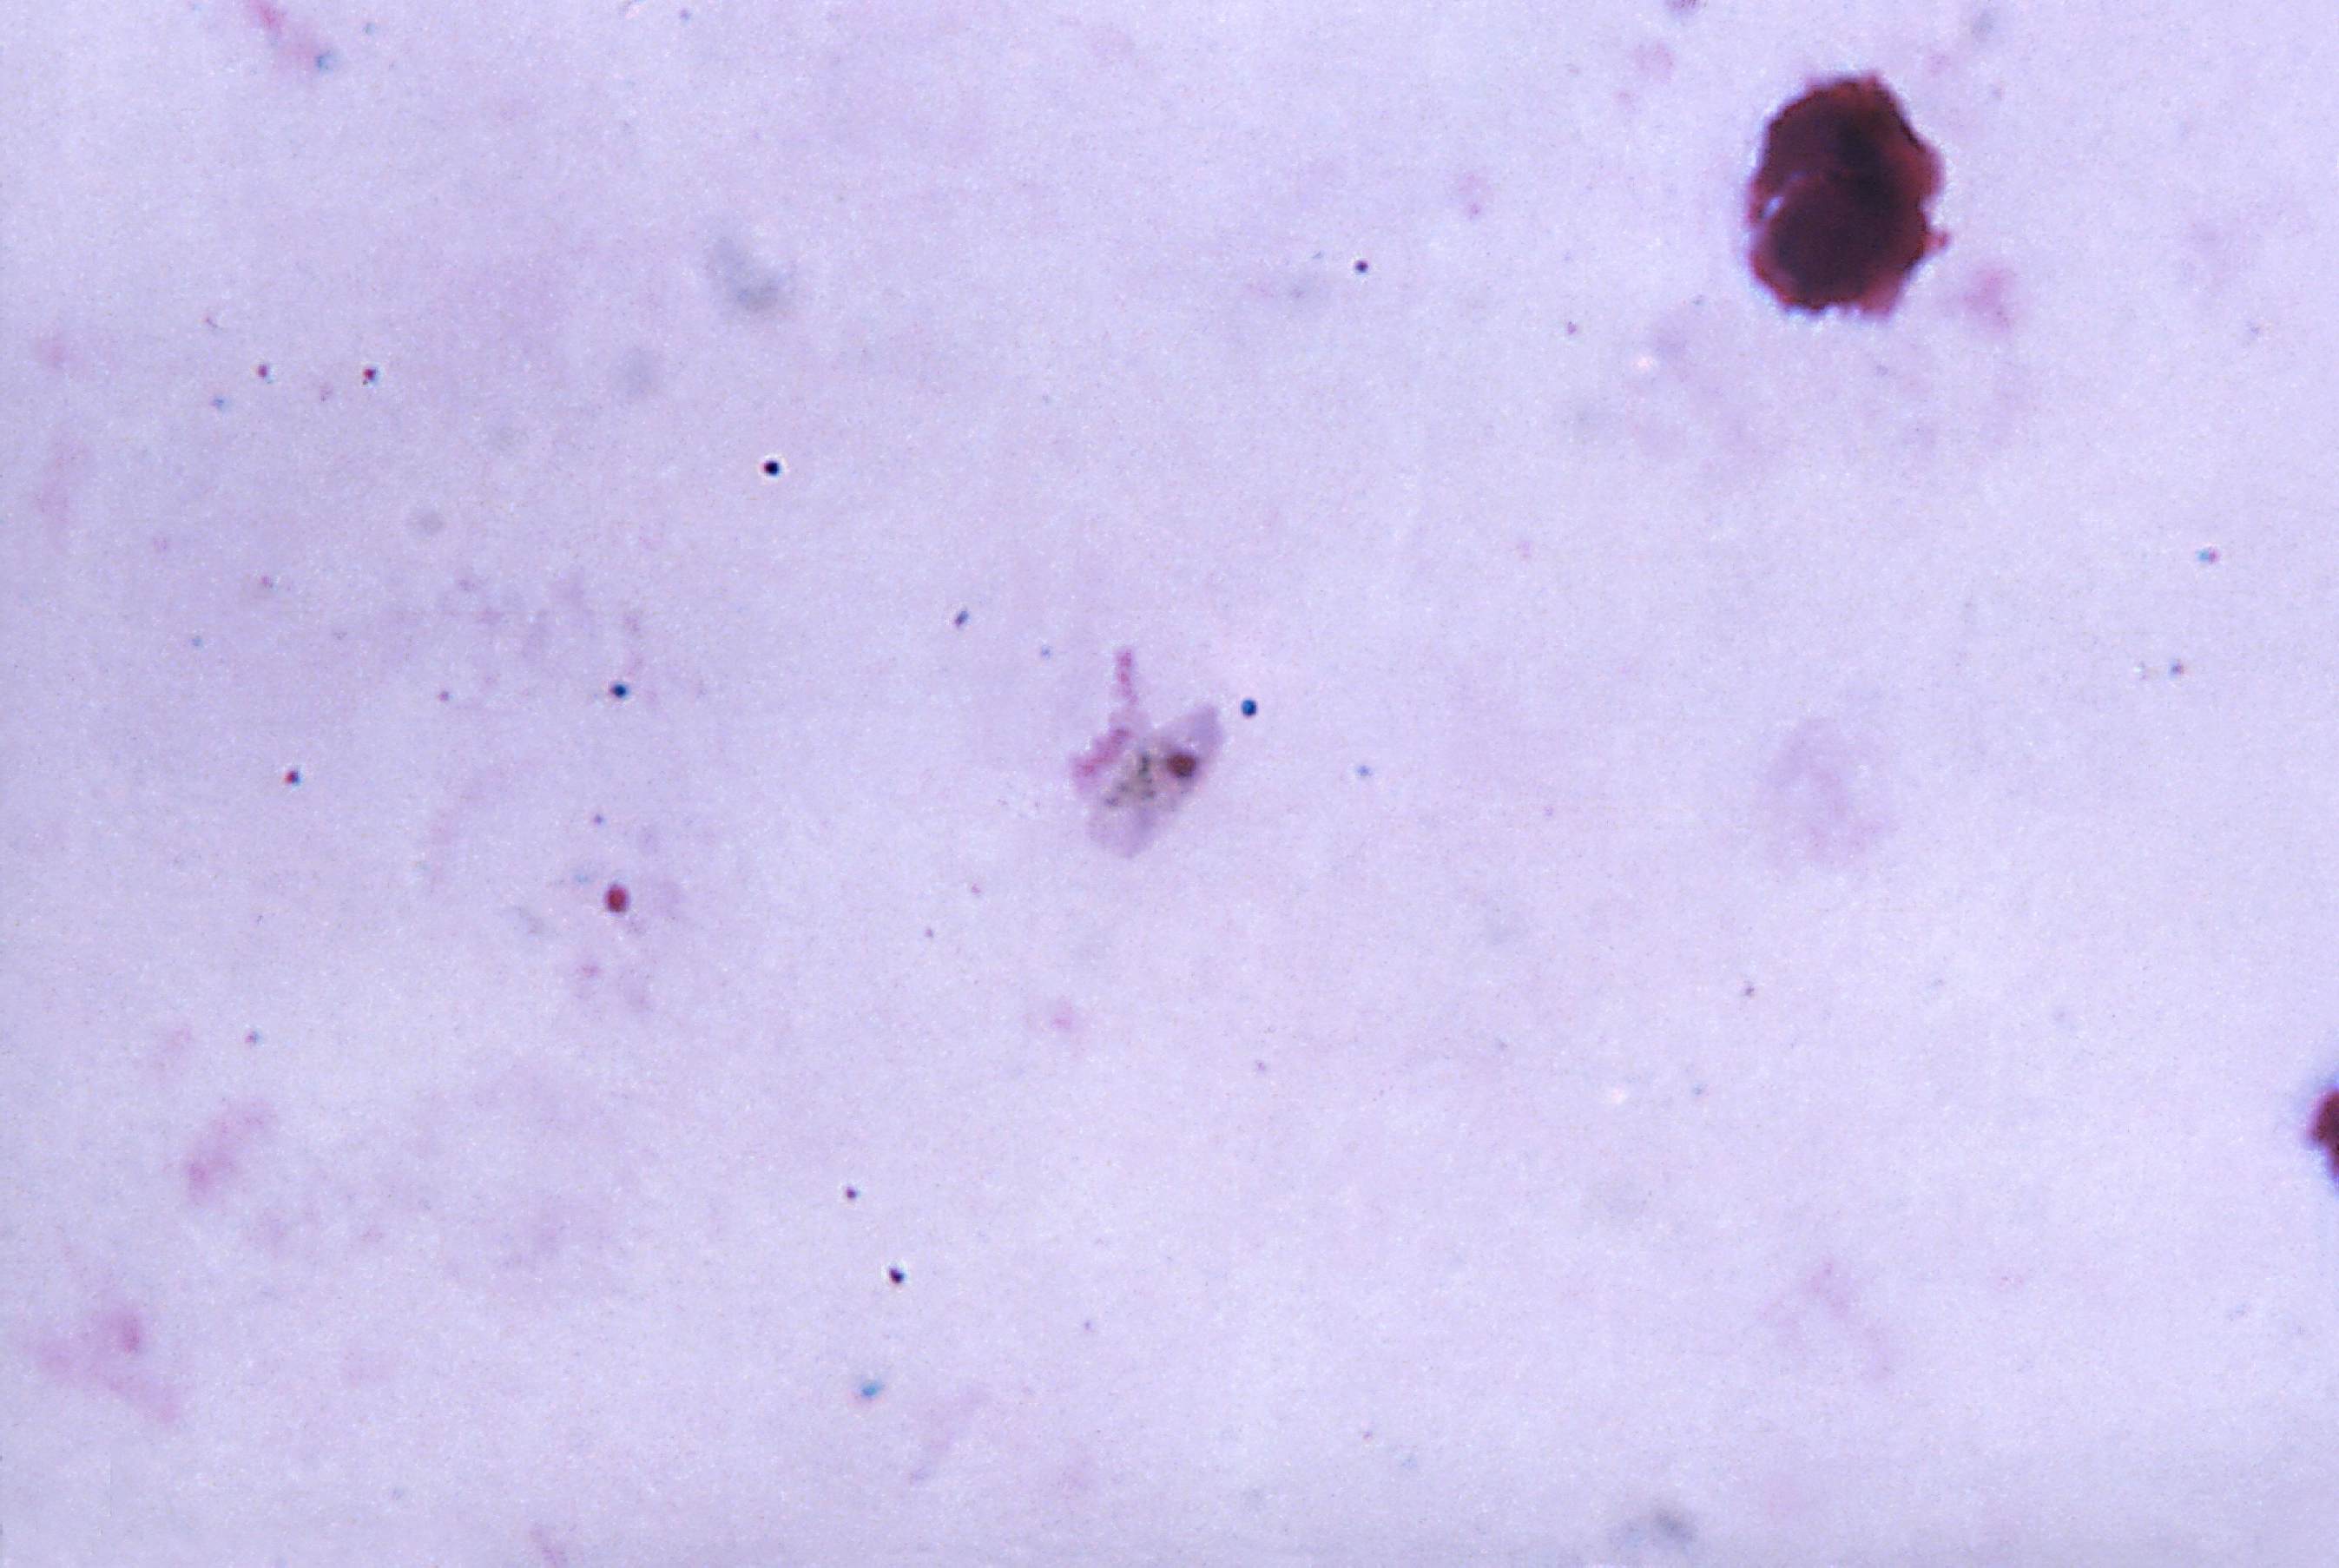 P. falciparum gametocyte pic. Многочисленные мелкие тельца